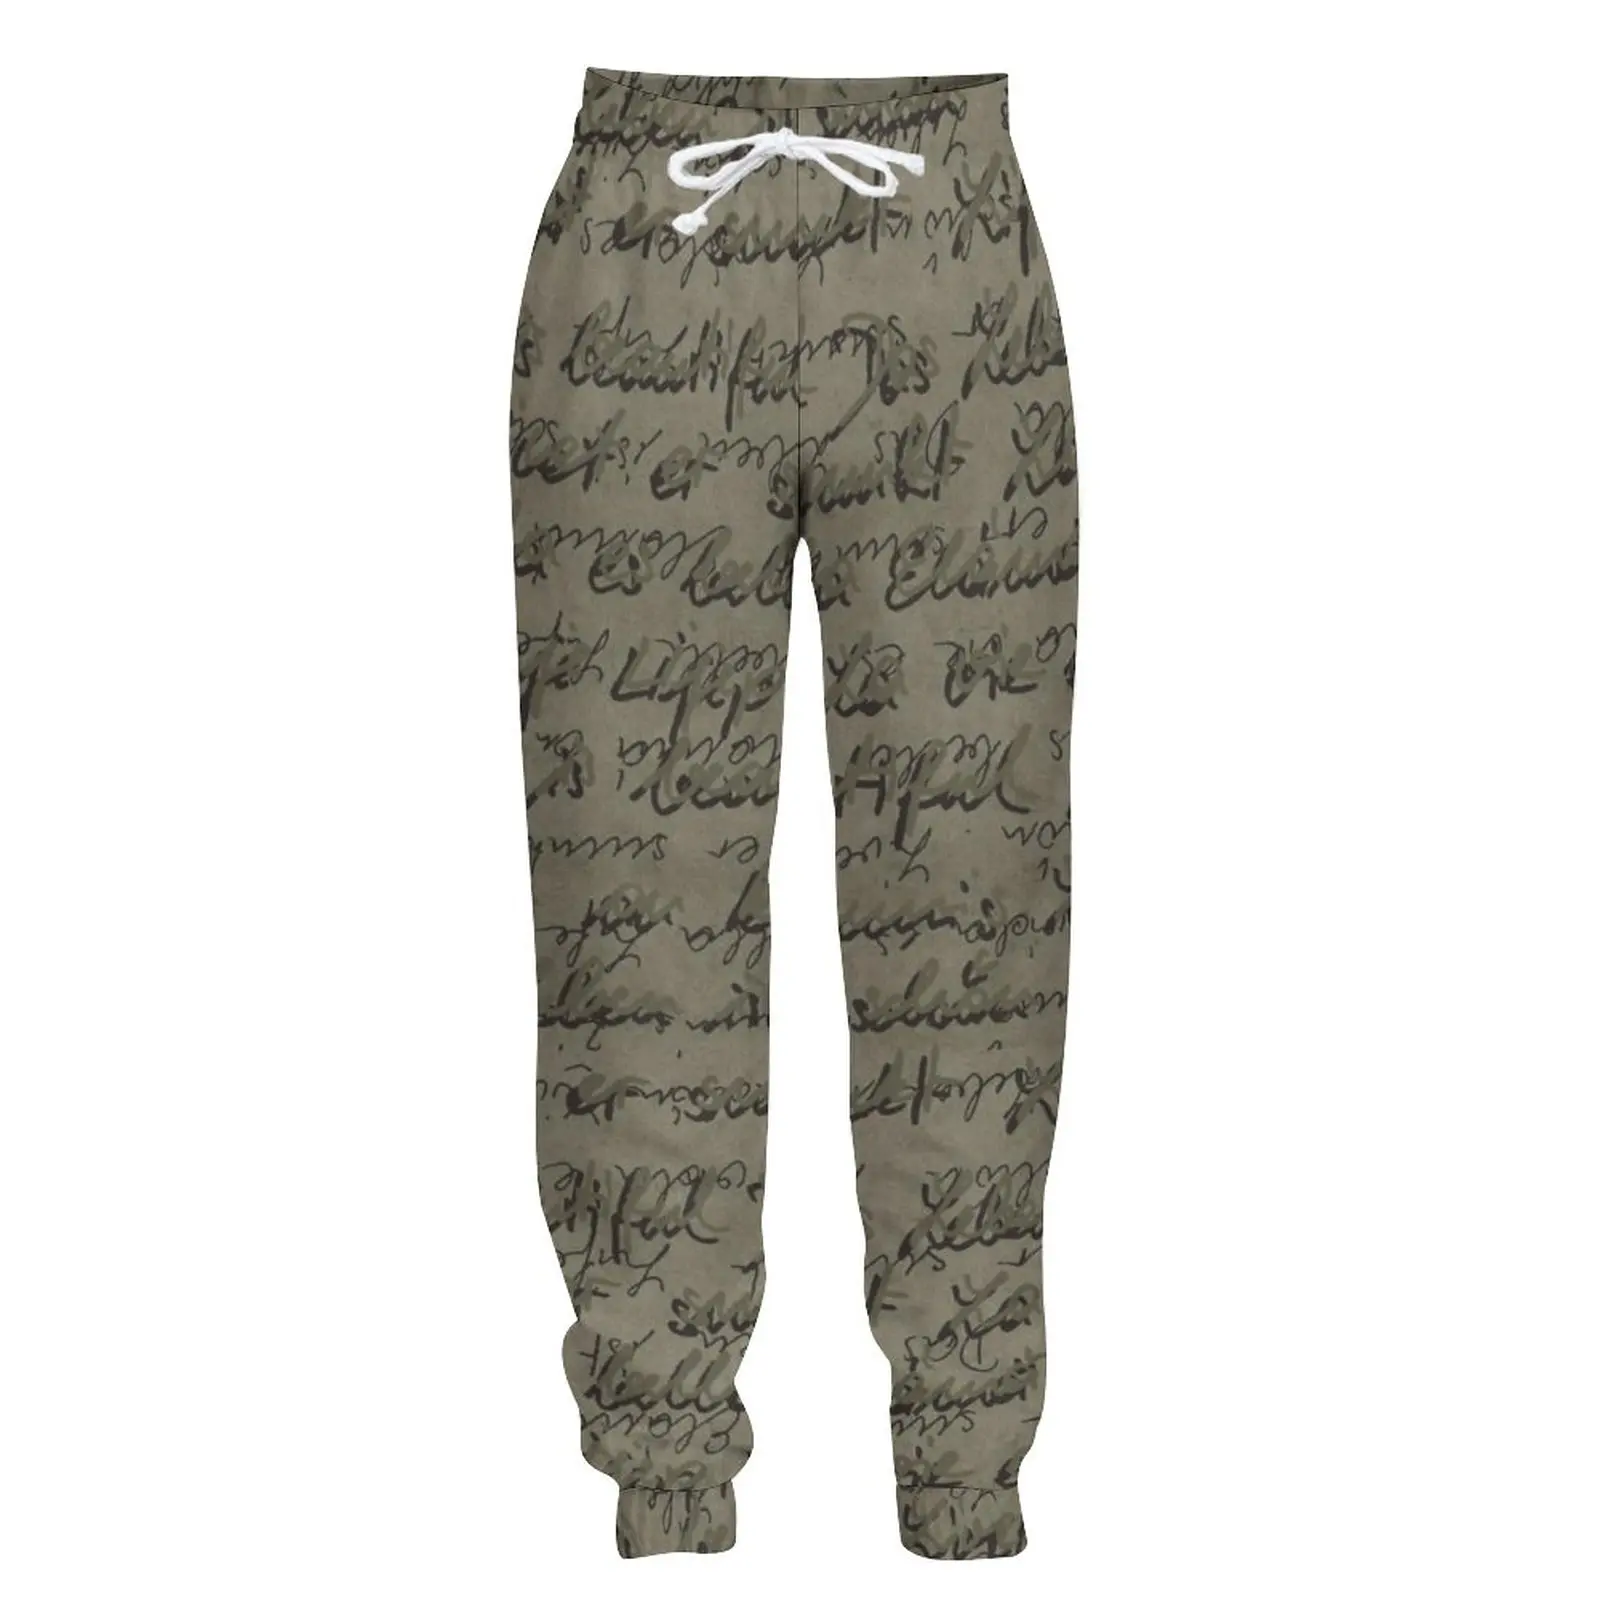 

Jumeast Jogger повседневные спортивные брюки мешковатые брюки для мужчин граффити буквы мужские прямые брюки уличная одежда спортивный костюм бр...